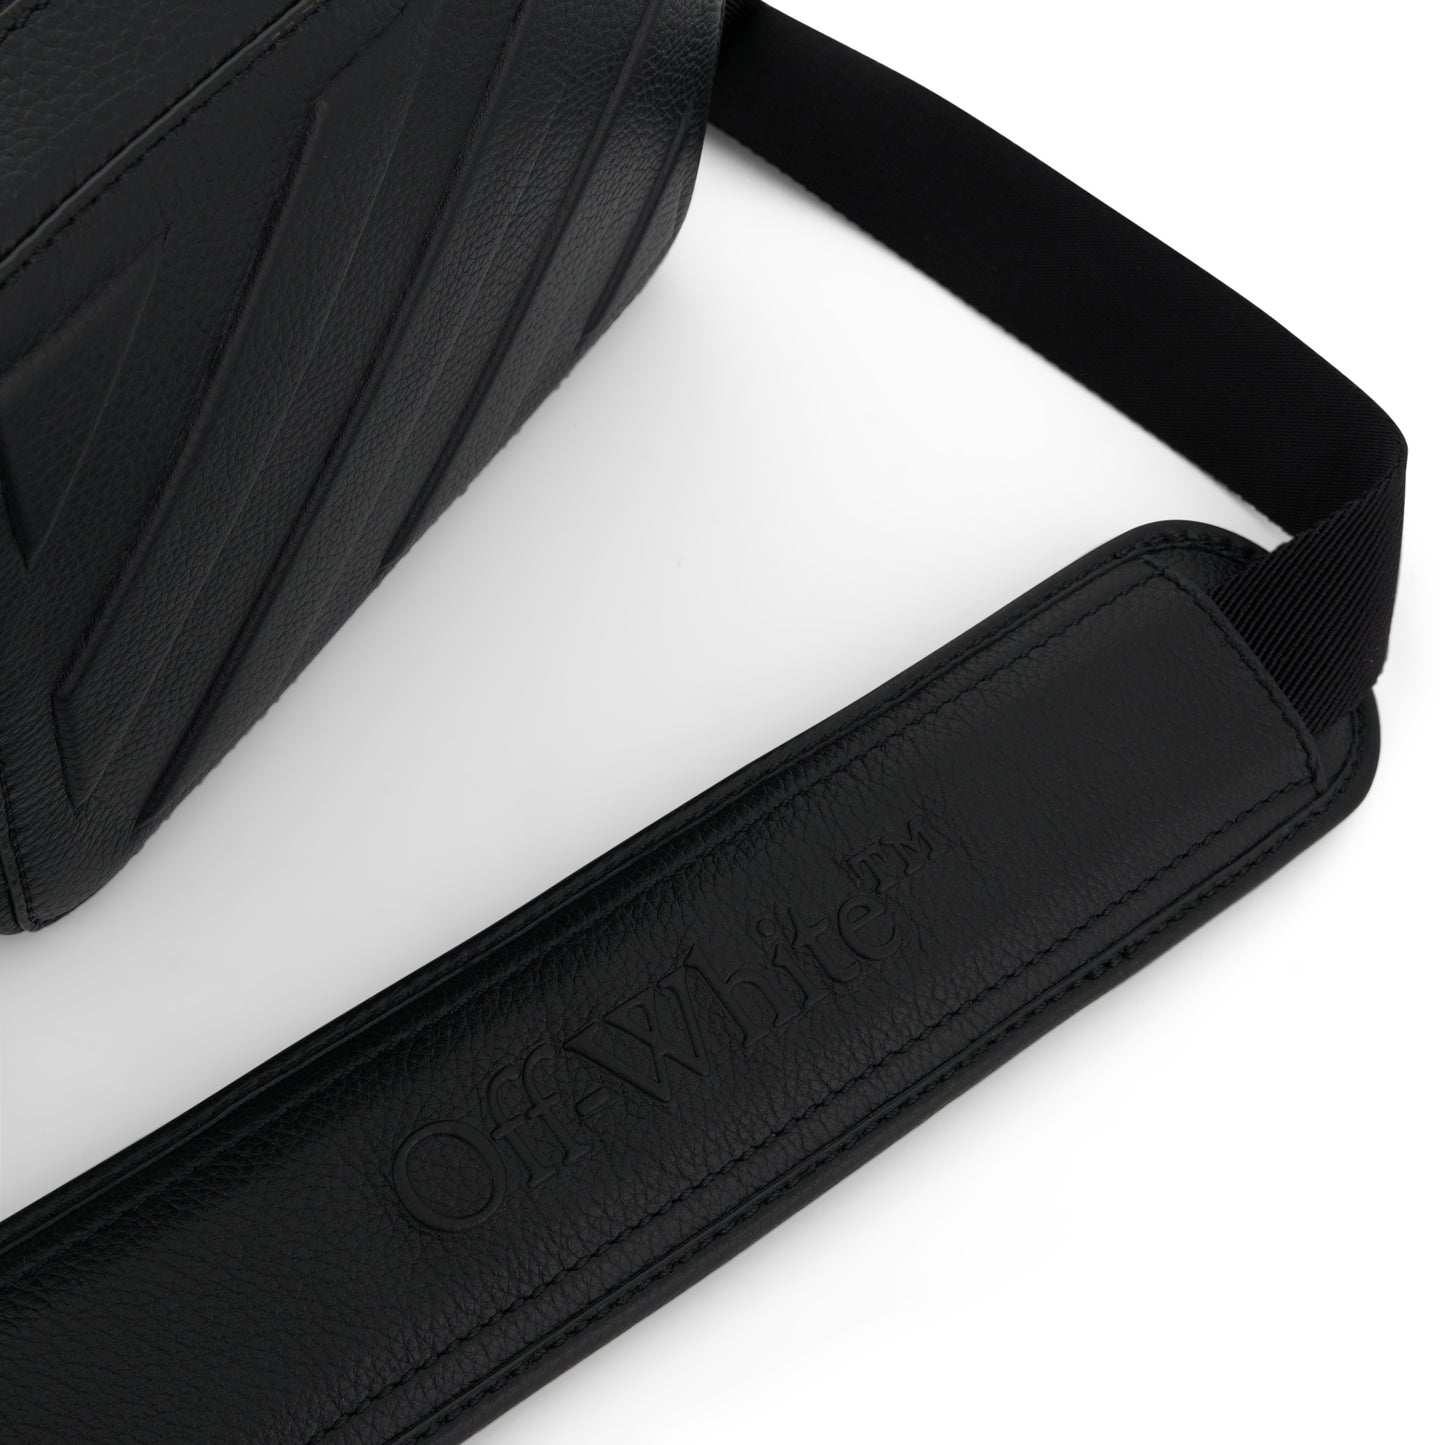 Diagonal Leather Camera Bag in Black